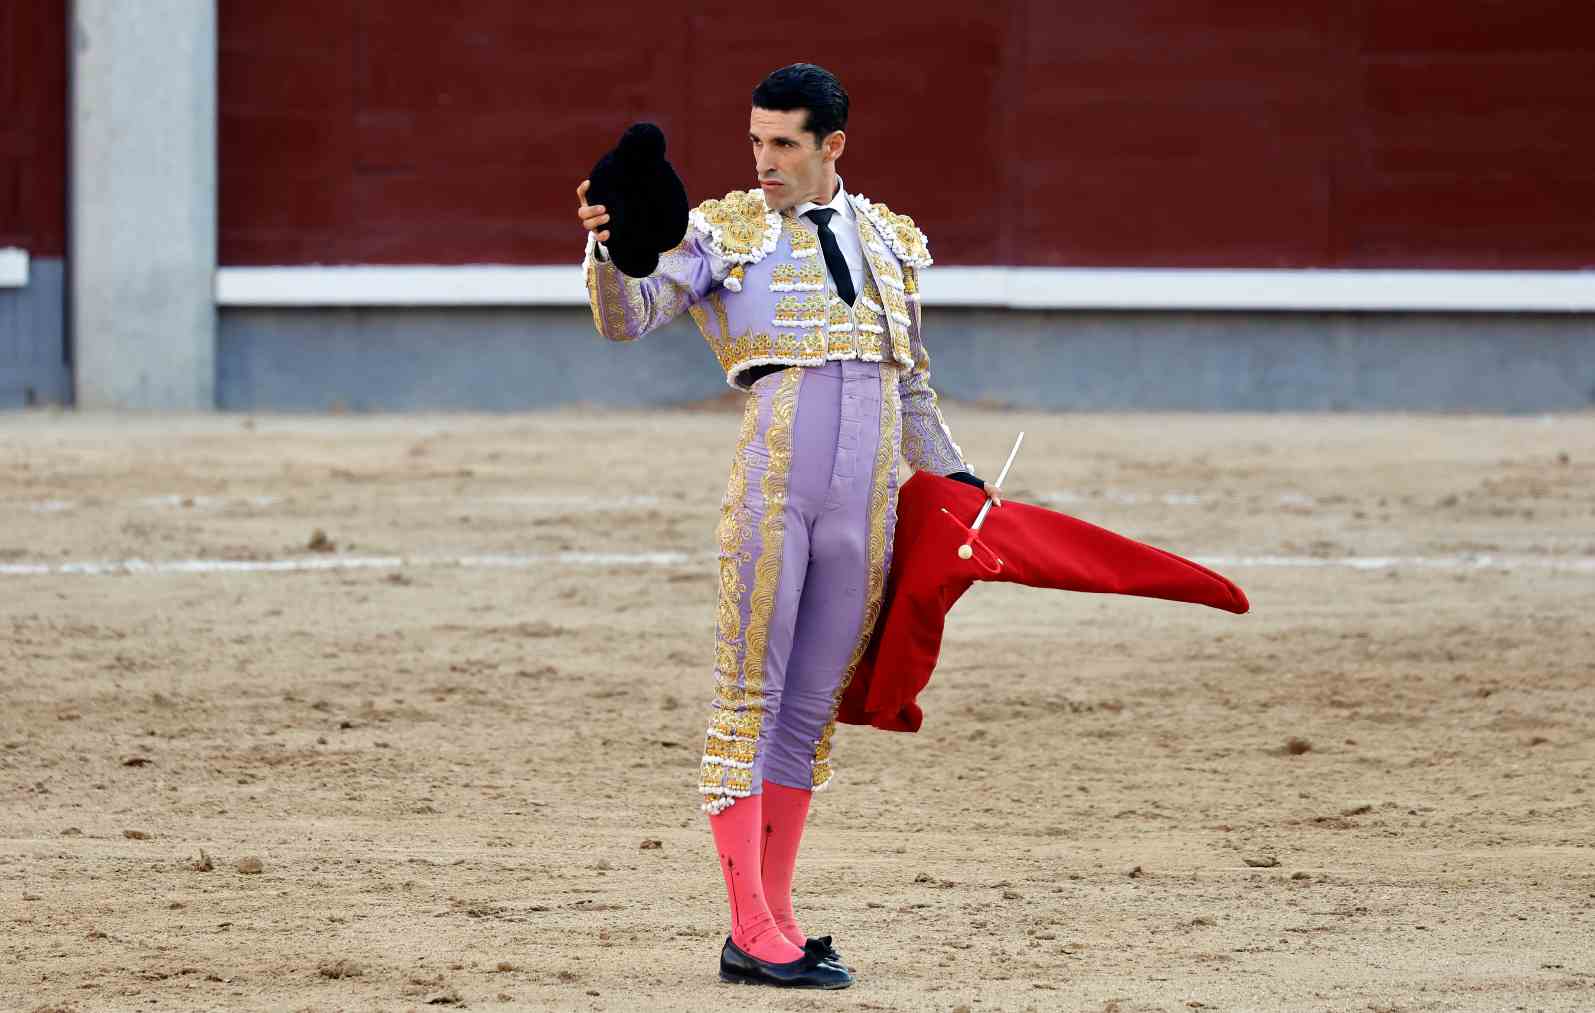 El maestro Talavante en la plaza de toros de Las Ventas.